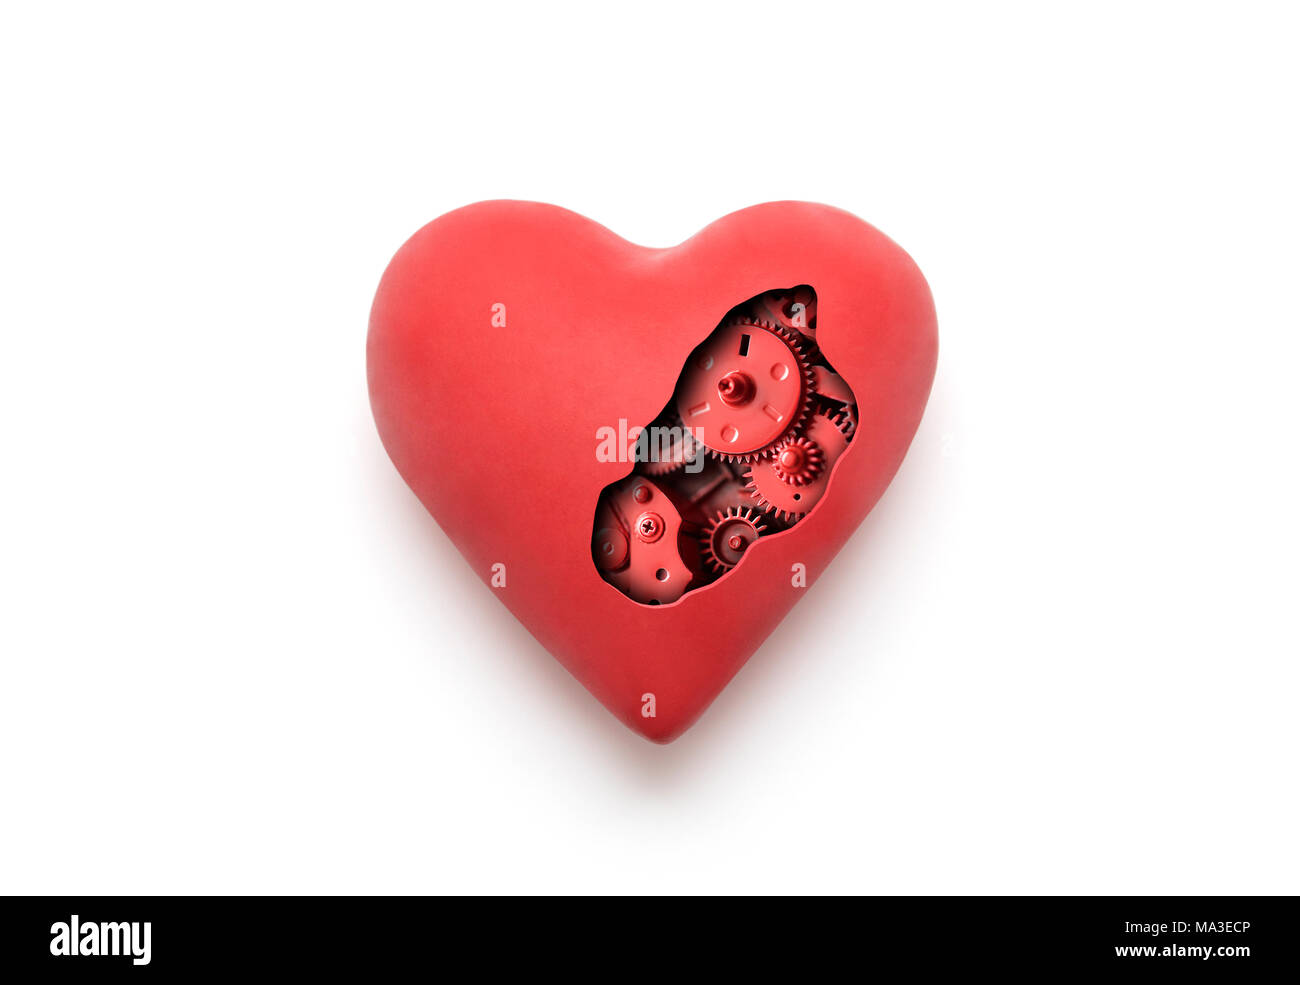 Coeur mécanique rouge sur fond blanc avec clipping path Banque D'Images